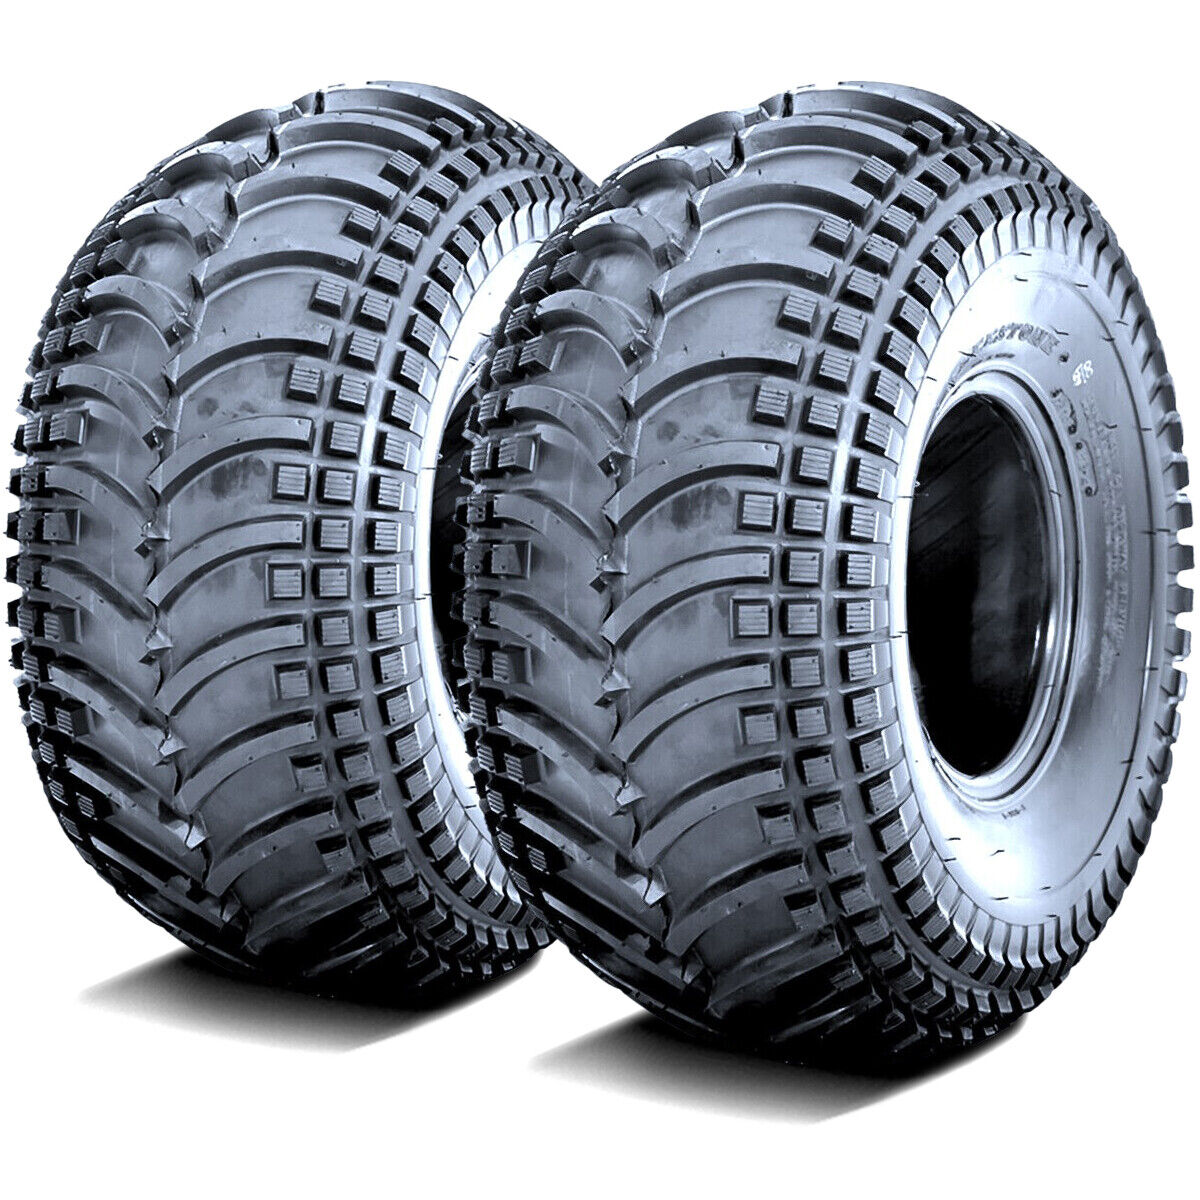 2 Tires Deestone D930 24x9.00-11 24x9-11 24x9x11 40F 4 Ply MT M/T Mud ATV UTV